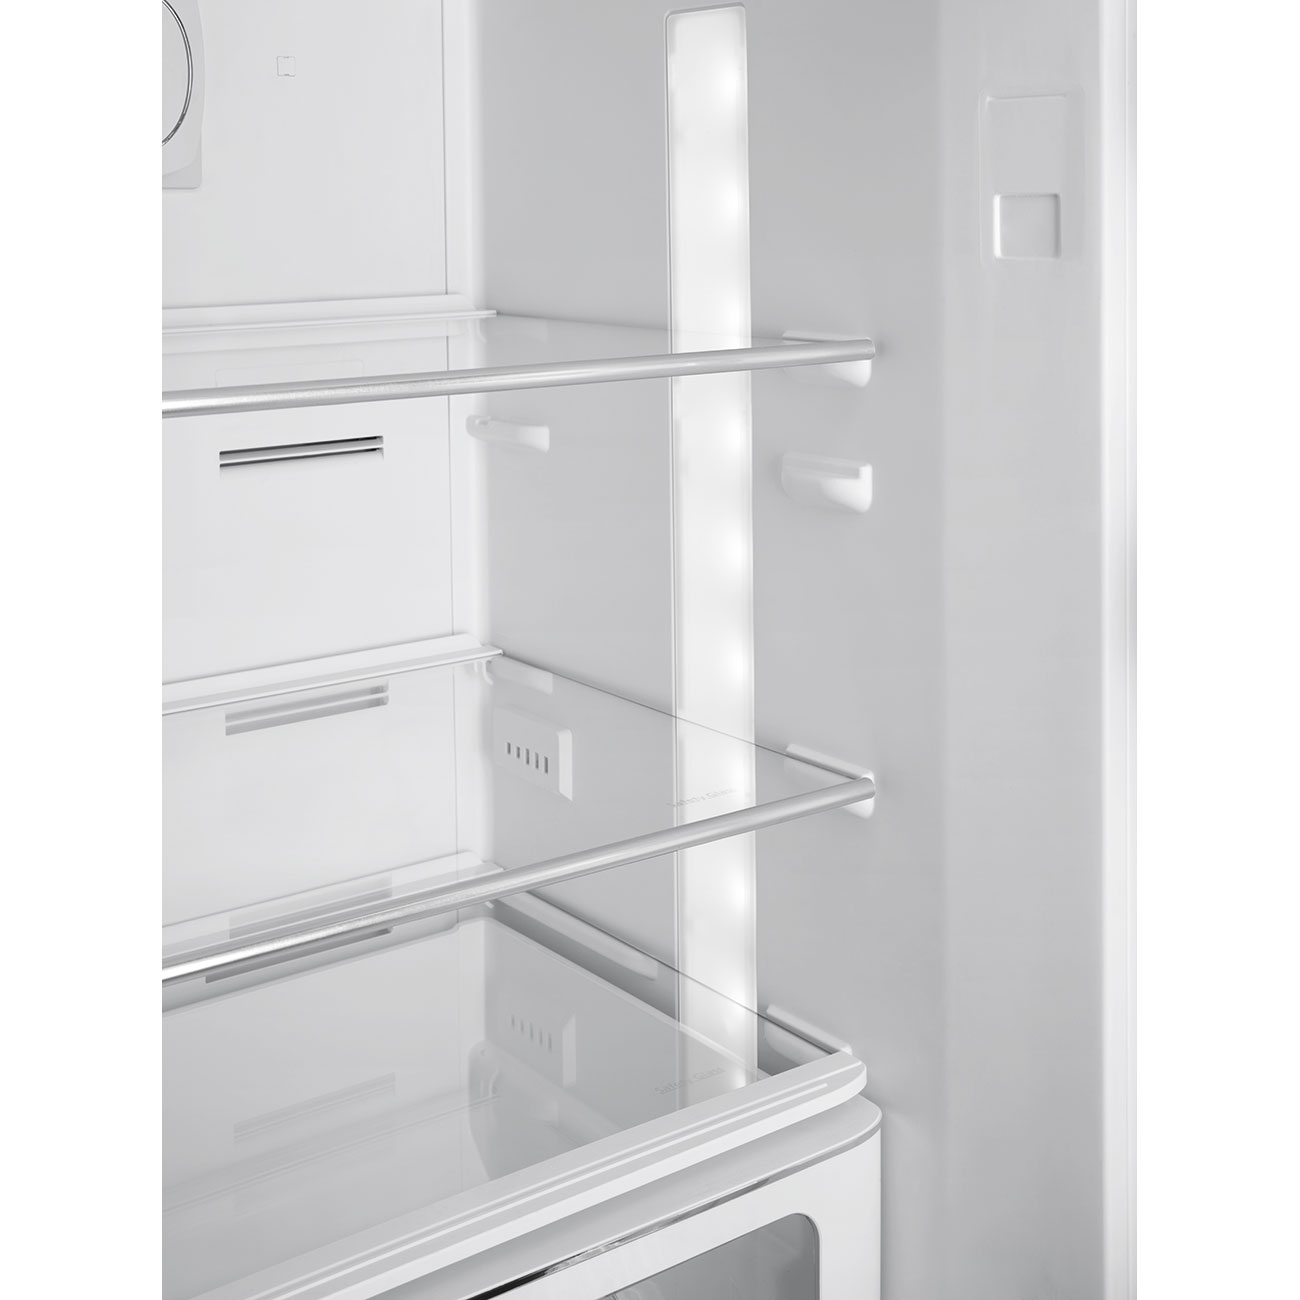 Pastellgrün Retro-Kühlschränke von Smeg_2